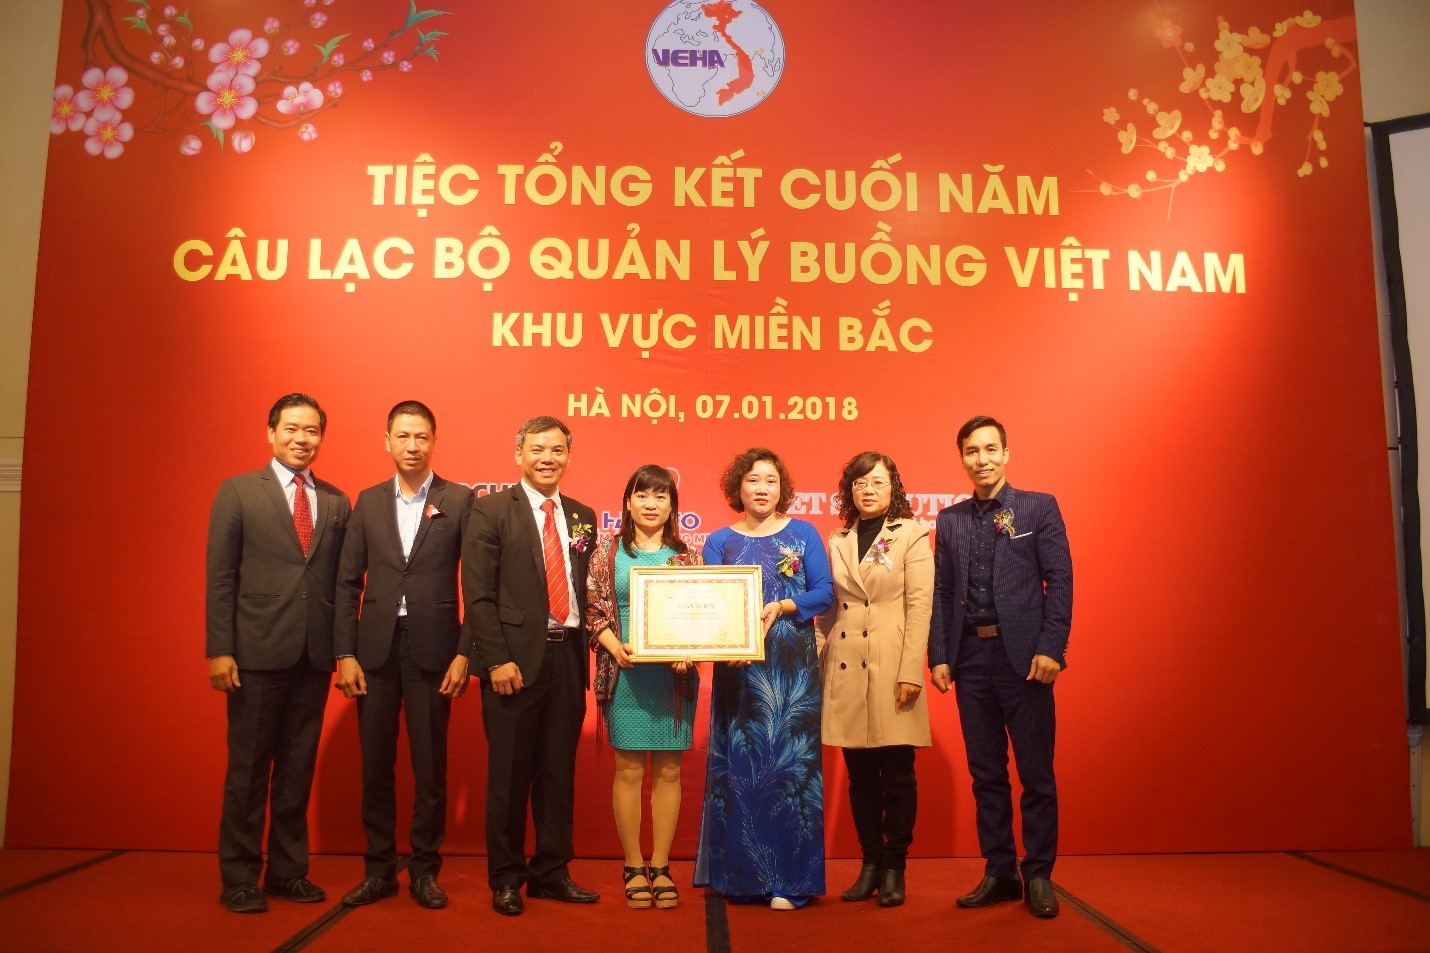 CLB quản lý Buồng Việt Nam tổ chức Lễ tổng kết công tác năm 2017 và phương hướng hoạt động năm 2018